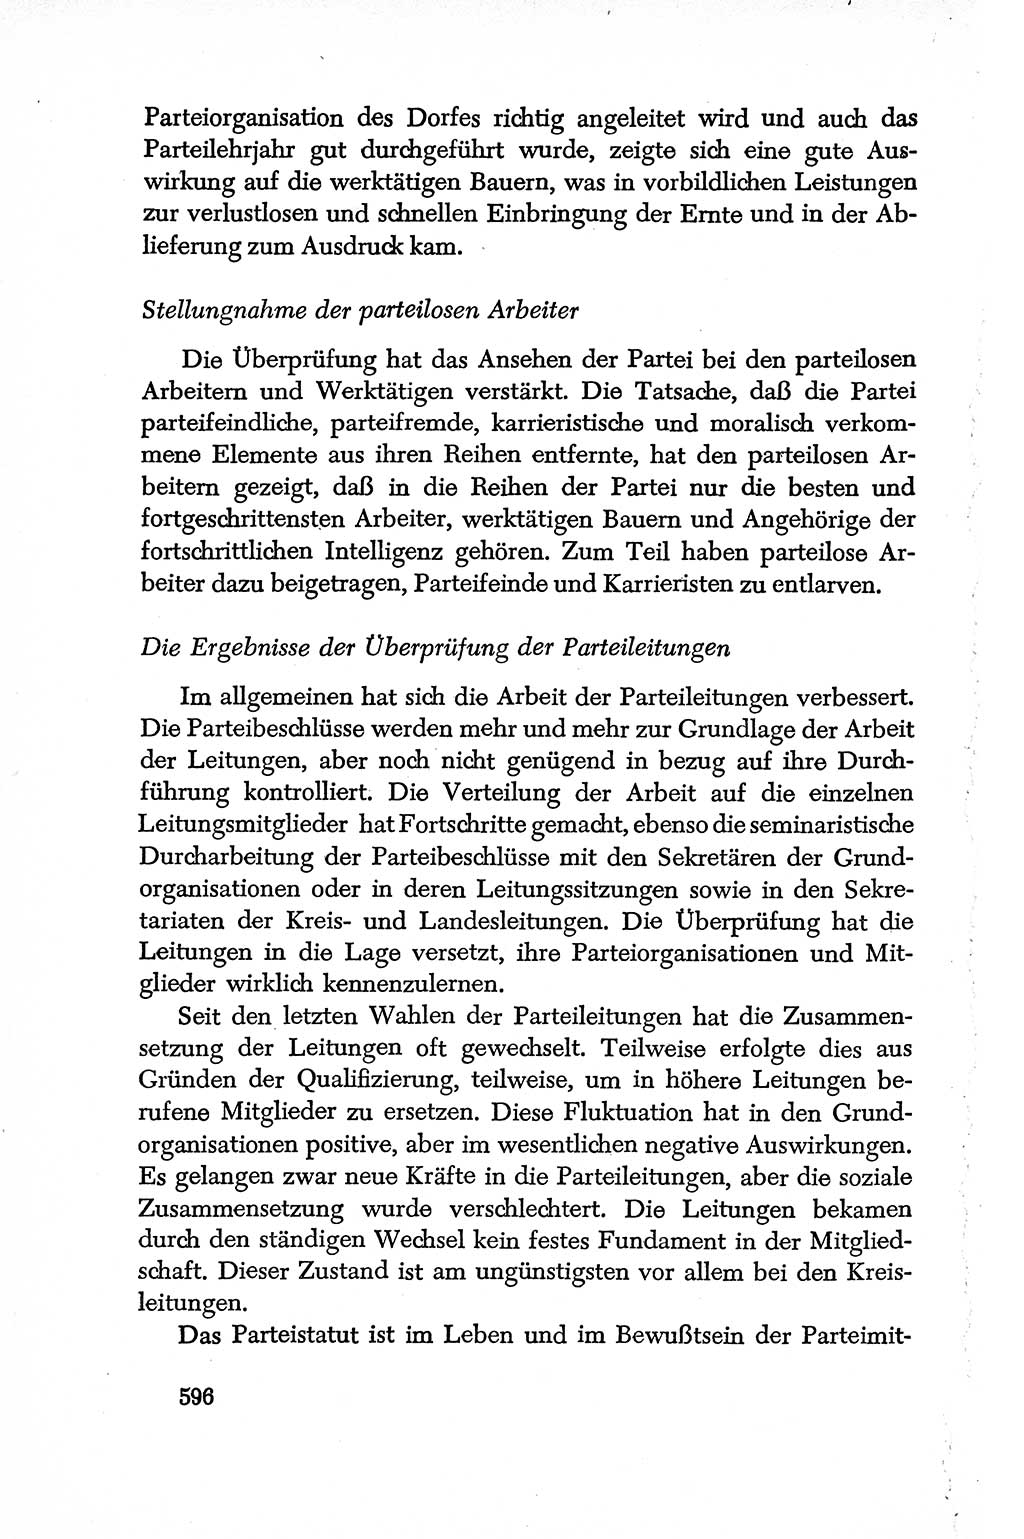 Dokumente der Sozialistischen Einheitspartei Deutschlands (SED) [Deutsche Demokratische Republik (DDR)] 1950-1952, Seite 596 (Dok. SED DDR 1950-1952, S. 596)